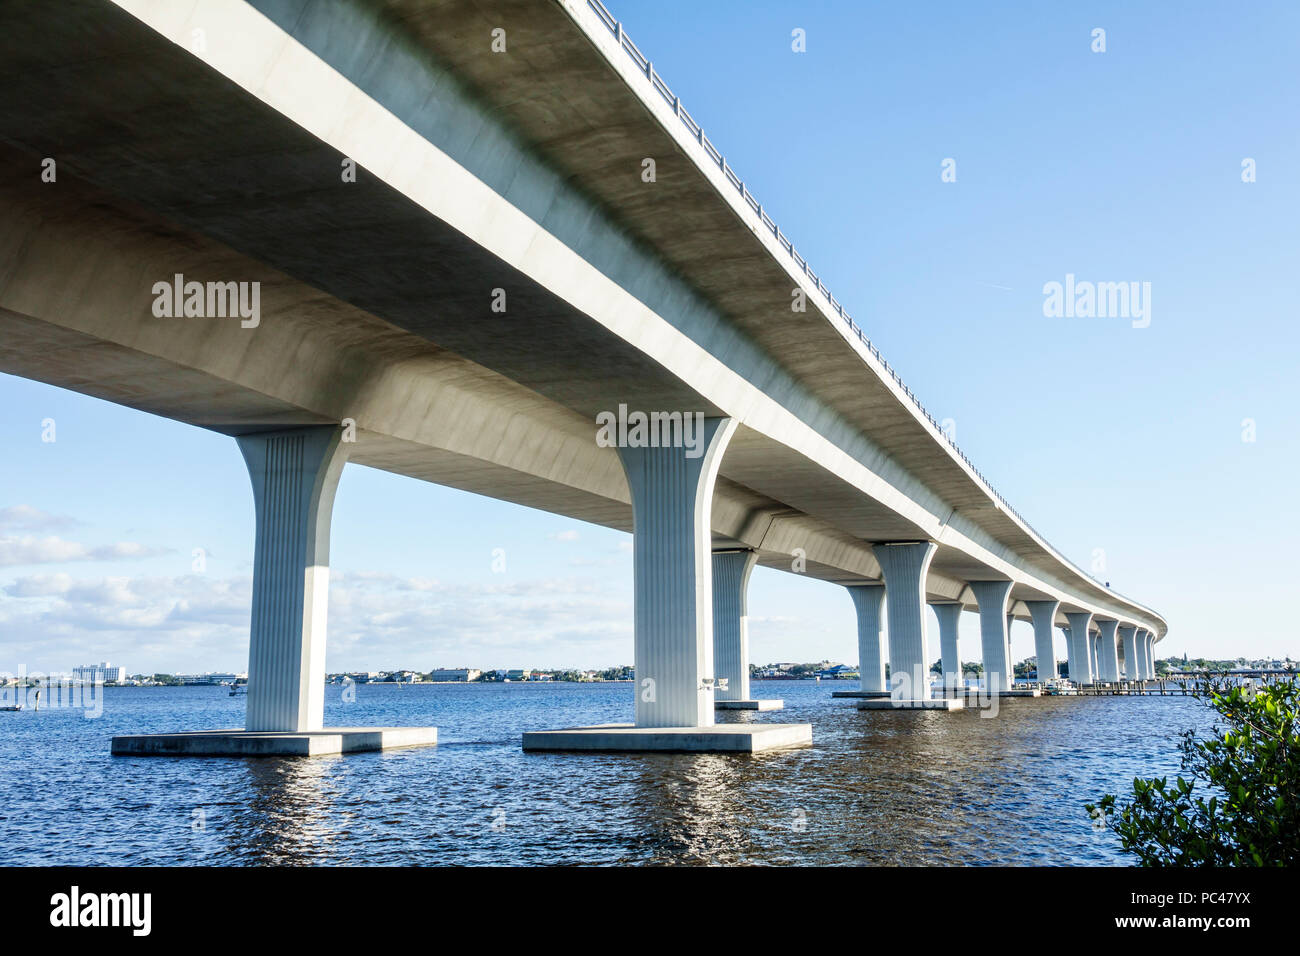 Stuart Florida, St. Saint Lucie River Water, Route 1 Federal Highway Roosevelt Bridge, Betonsegmentbrücke, Stützturmsäule, Wasser, Blick von und Stockfoto